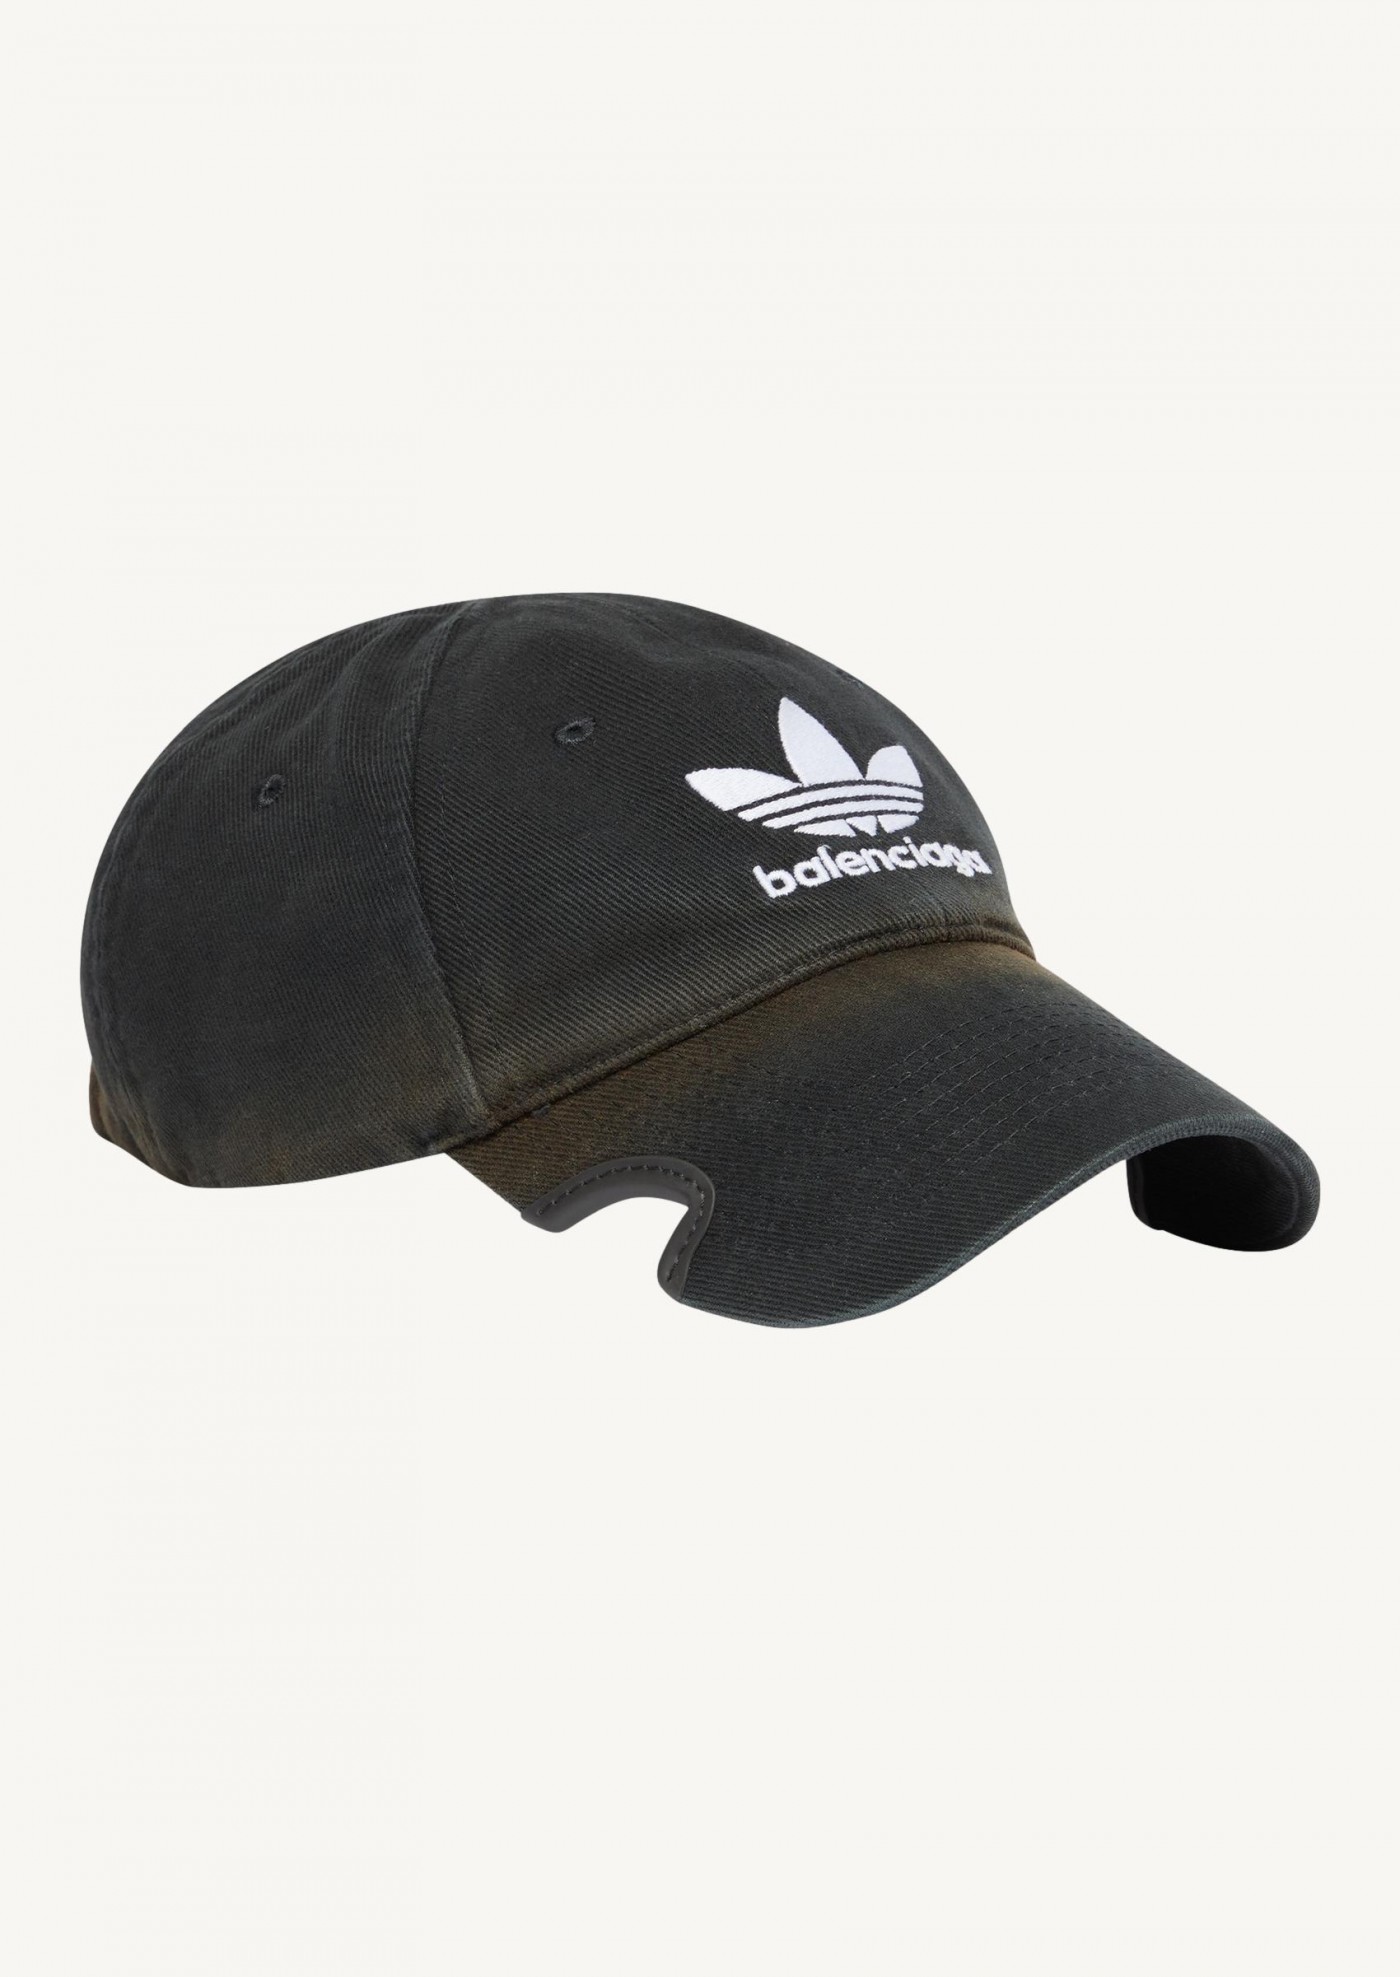 BALENCIAGA / Adidas - Caps